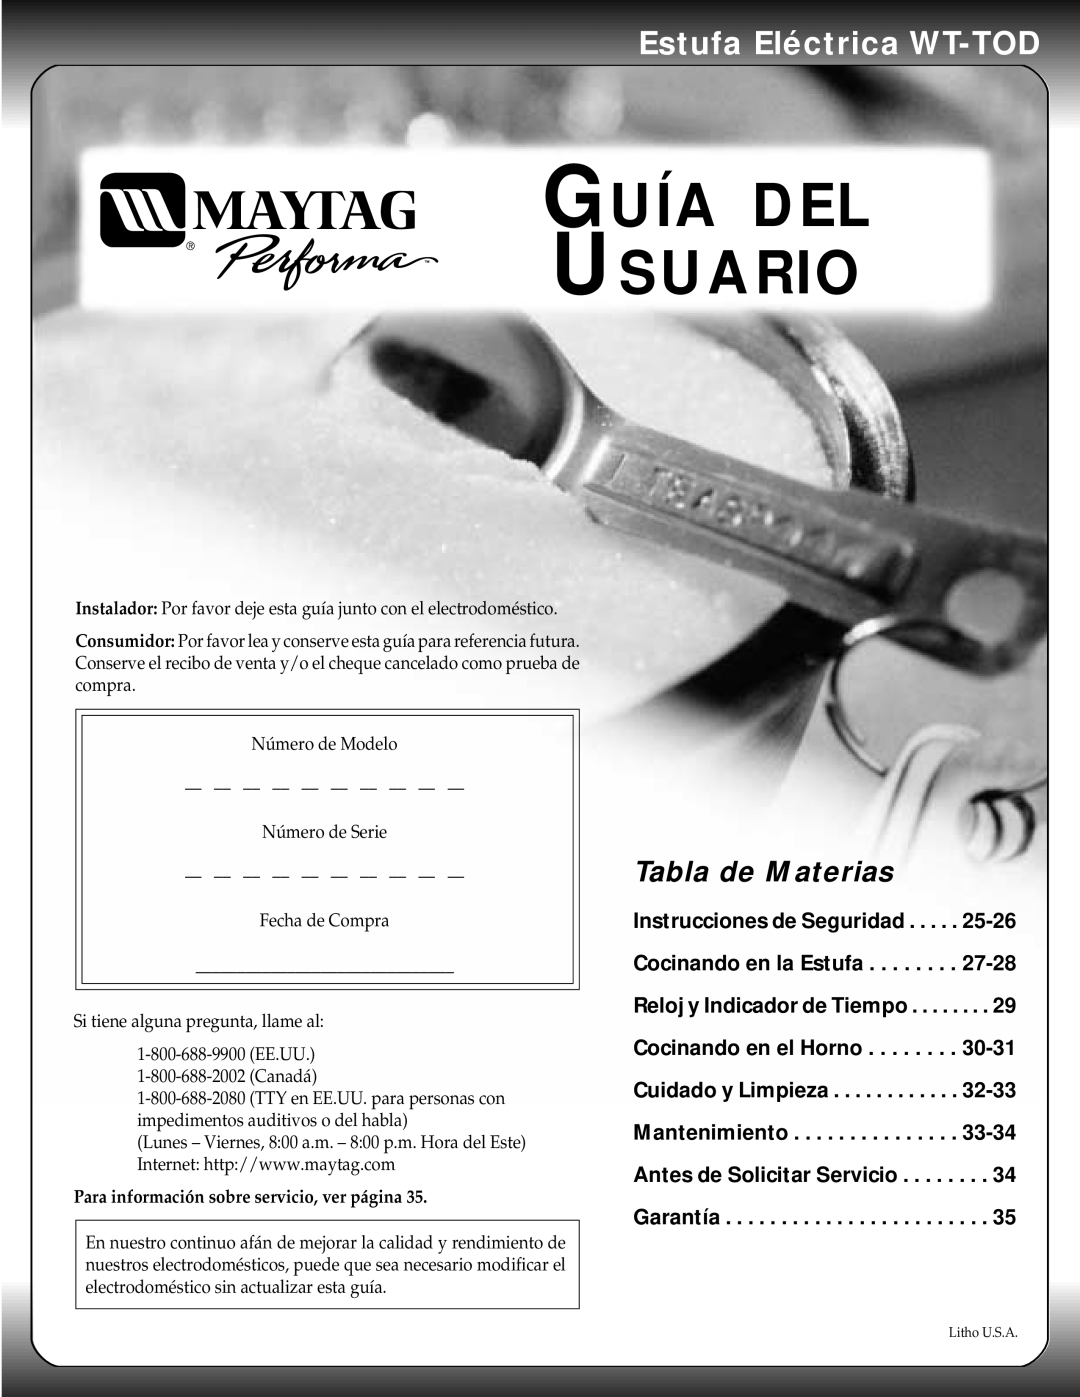 Maytag warranty Guía Del Usuario, Estufa Eléctrica WT-TOD, Tabla de Materias 